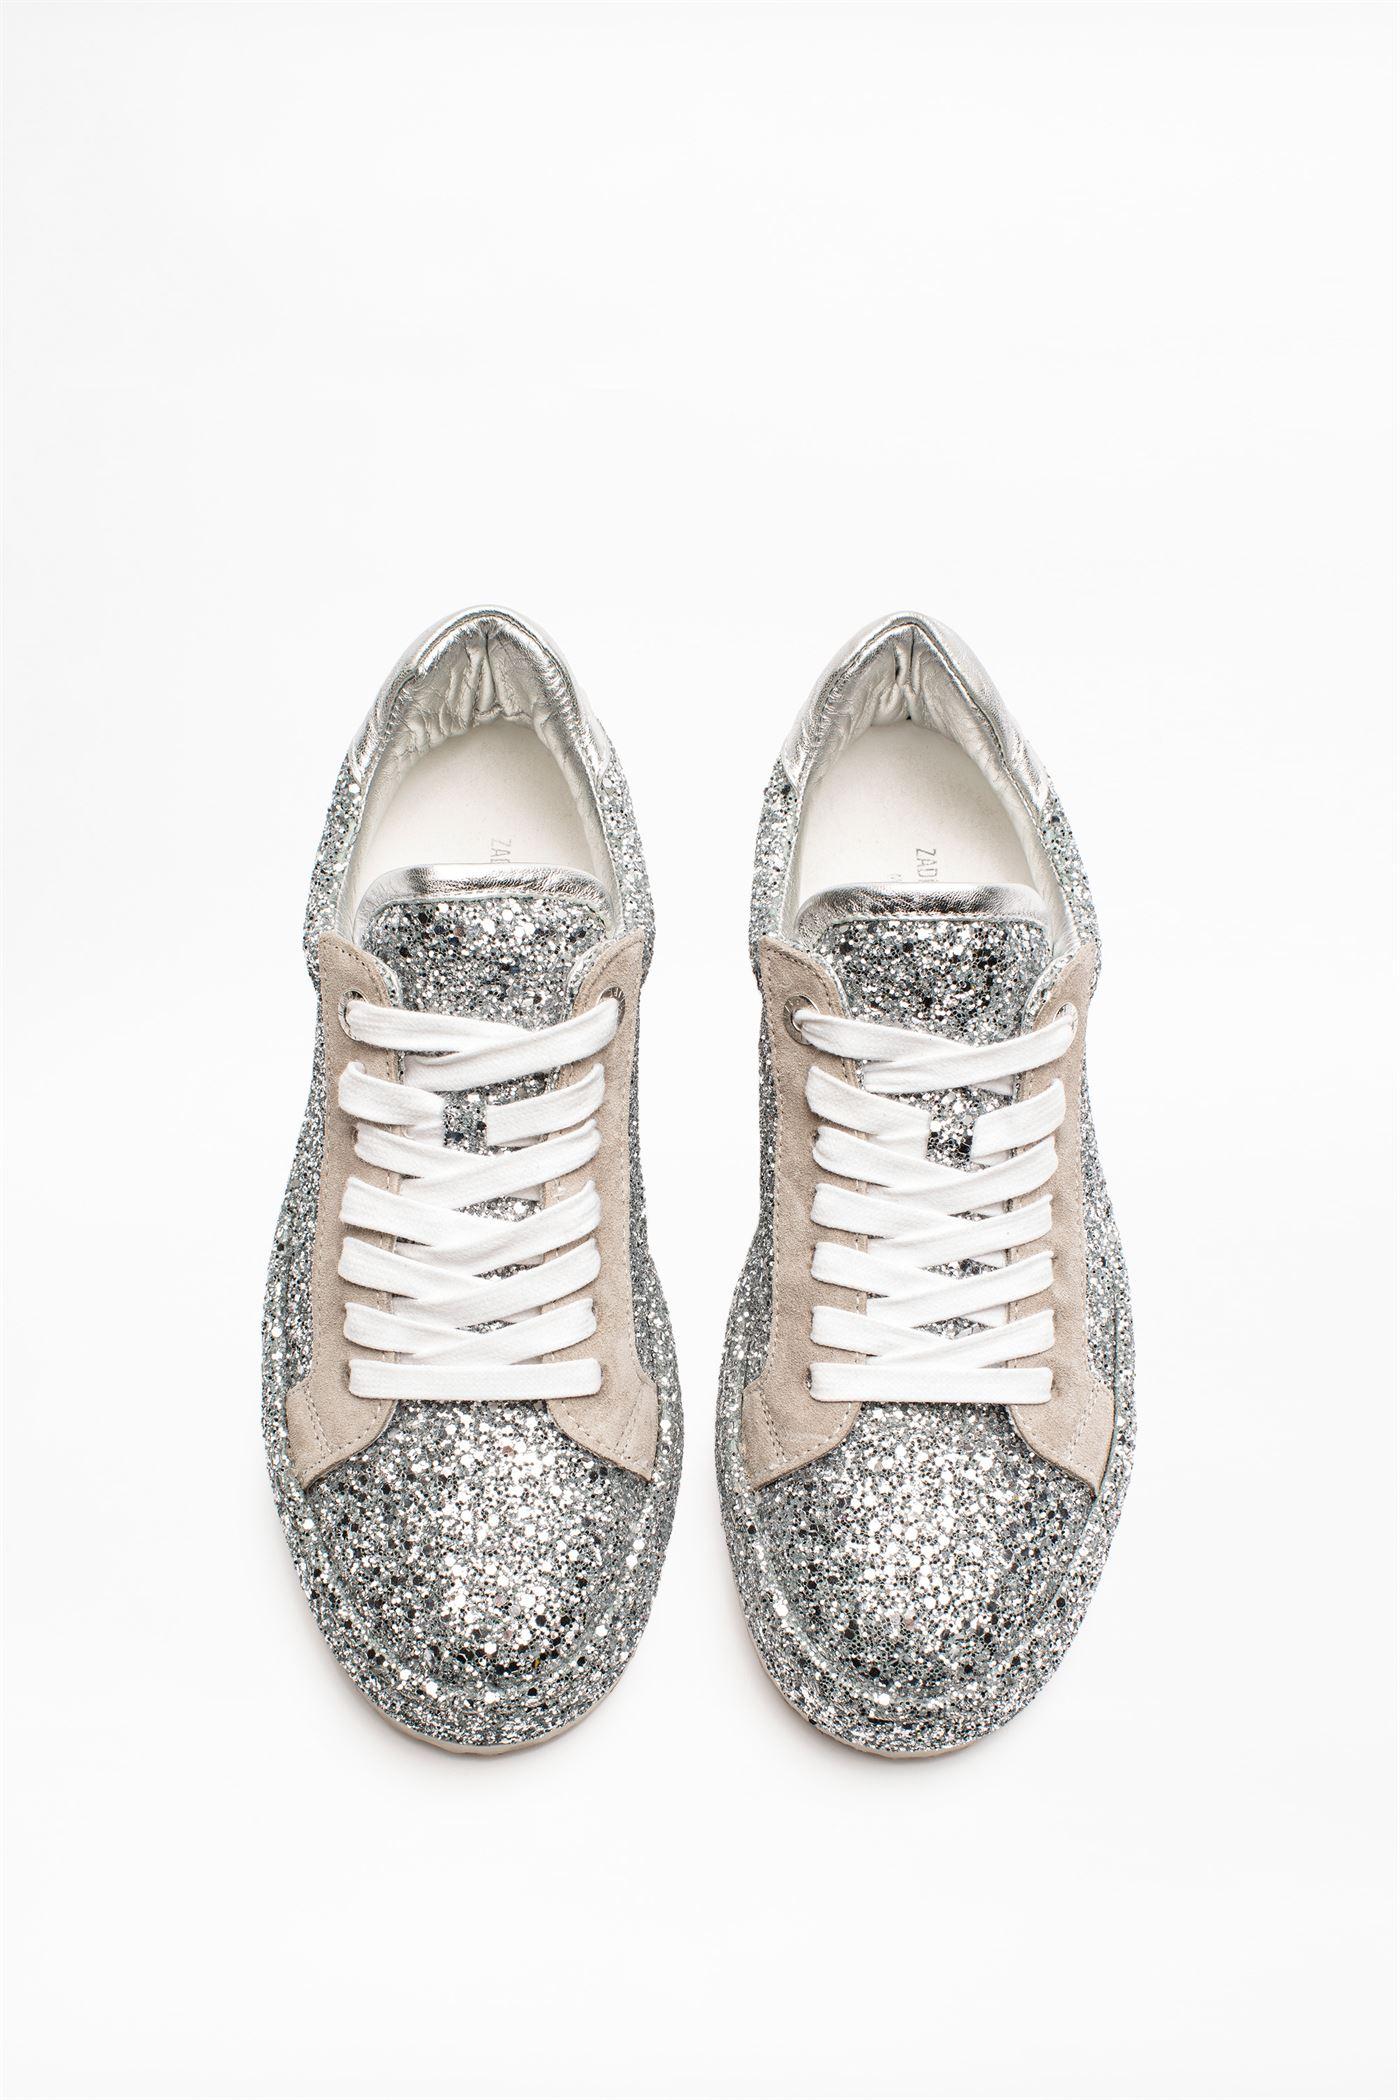 Zadig & Voltaire Zv1747 Dream Sneakers in Silver (Metallic) - Lyst